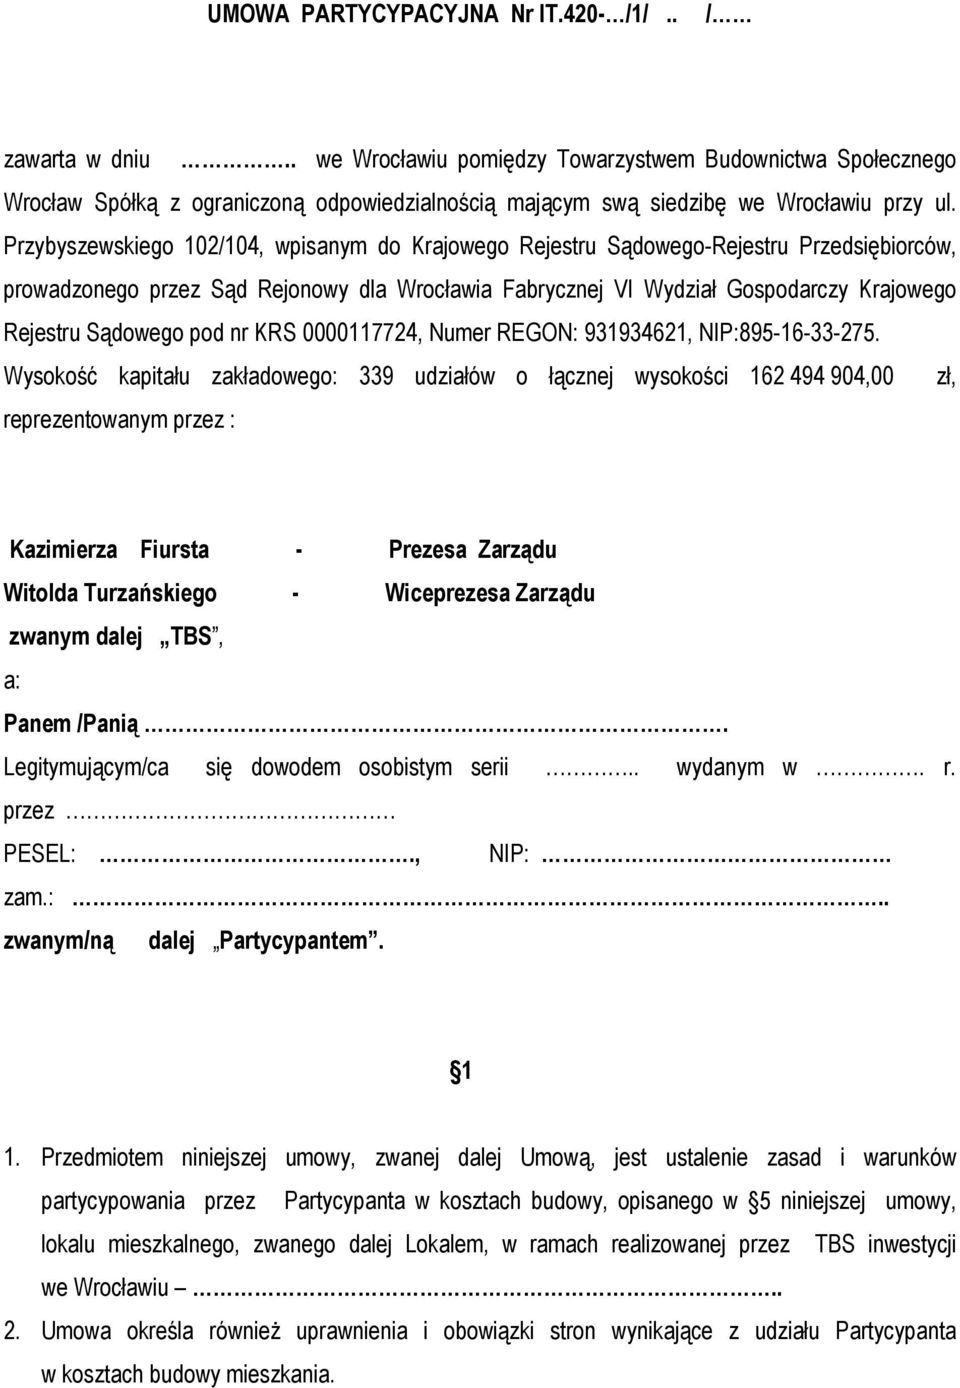 Przybyszewskiego 102/104, wpisanym do Krajowego Rejestru Sądowego-Rejestru Przedsiębiorców, prowadzonego przez Sąd Rejonowy dla Wrocławia Fabrycznej VI Wydział Gospodarczy Krajowego Rejestru Sądowego